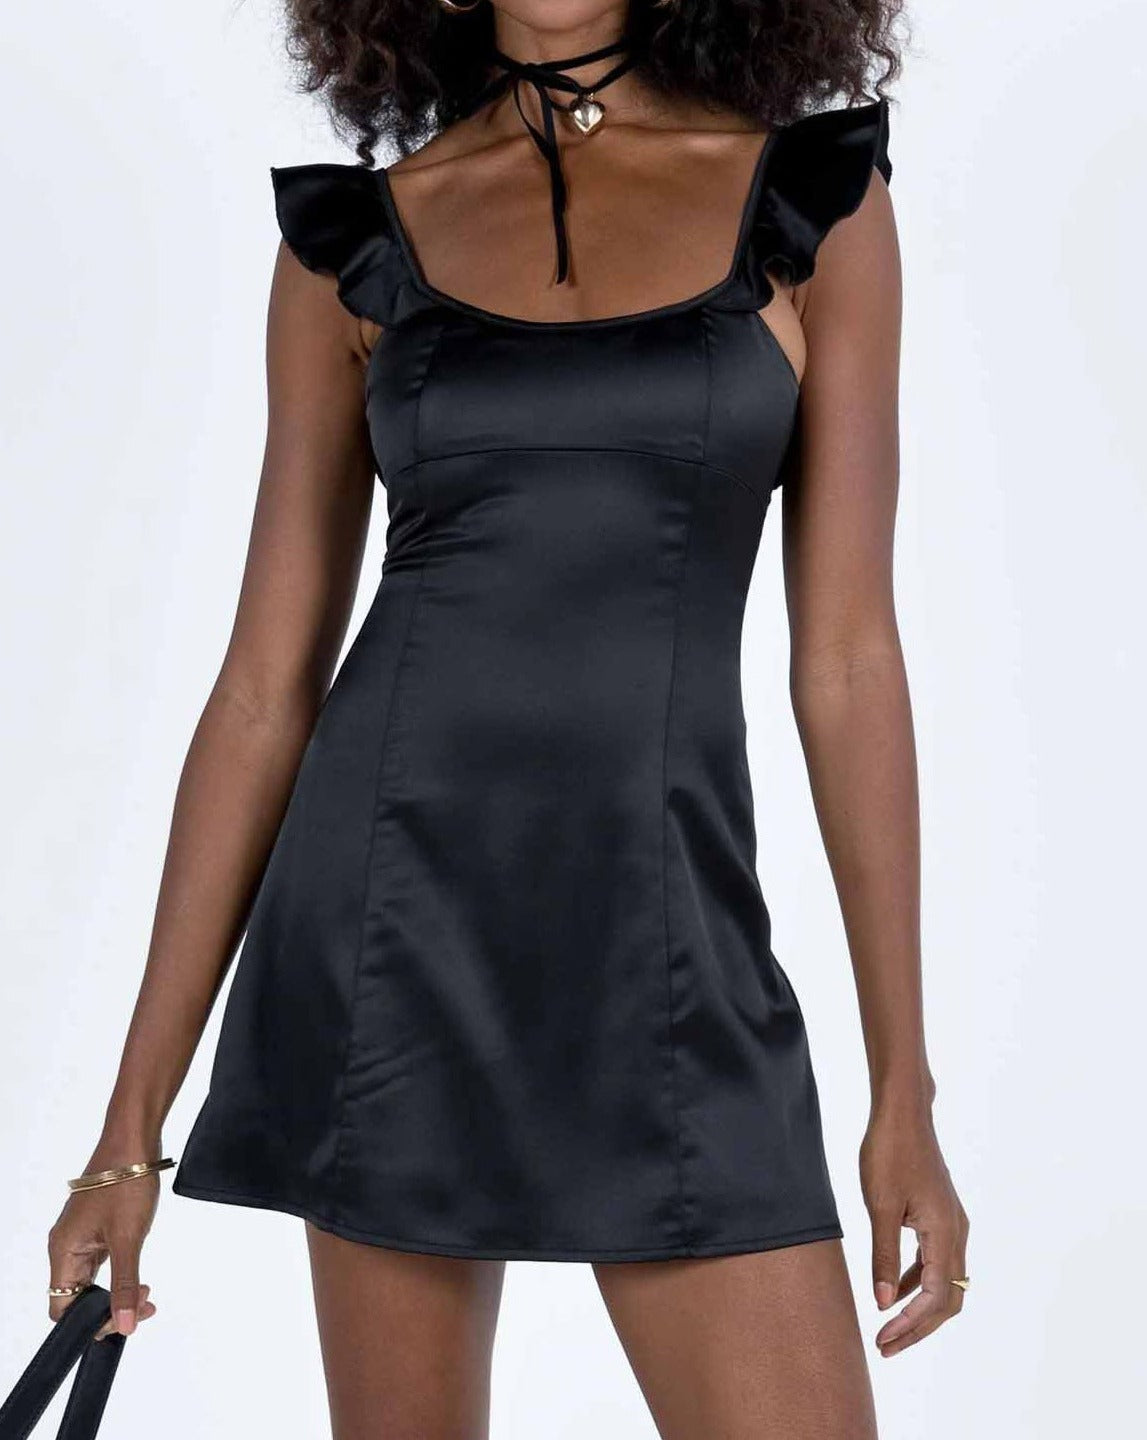 NTG Fad Mini Dresses Black / S Ruffled slim fit dress